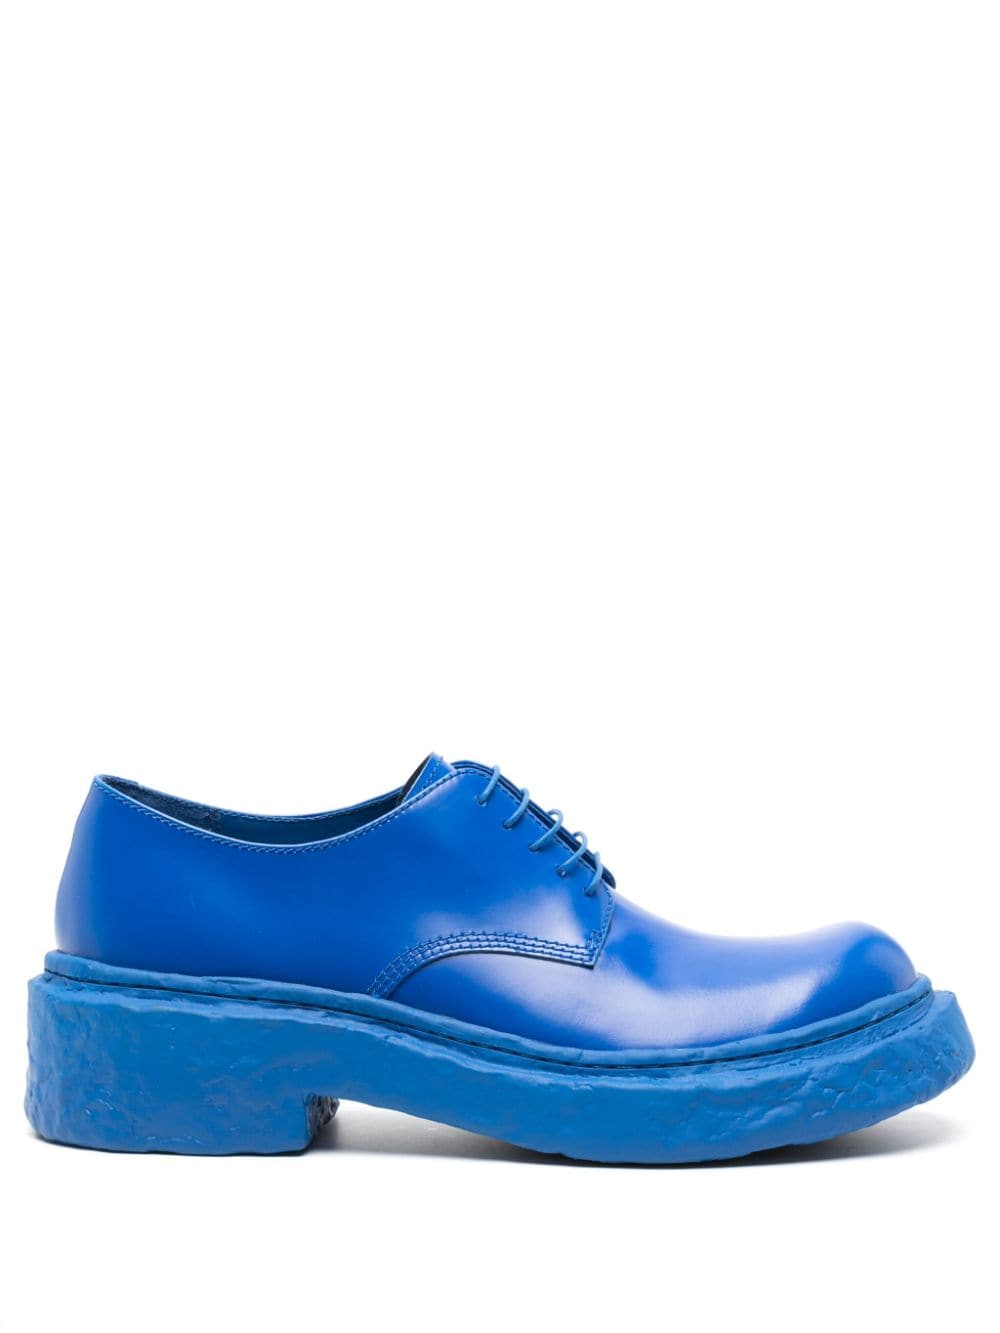 CamperLab Vamonos Derby-Schuhe - Blau von CamperLab